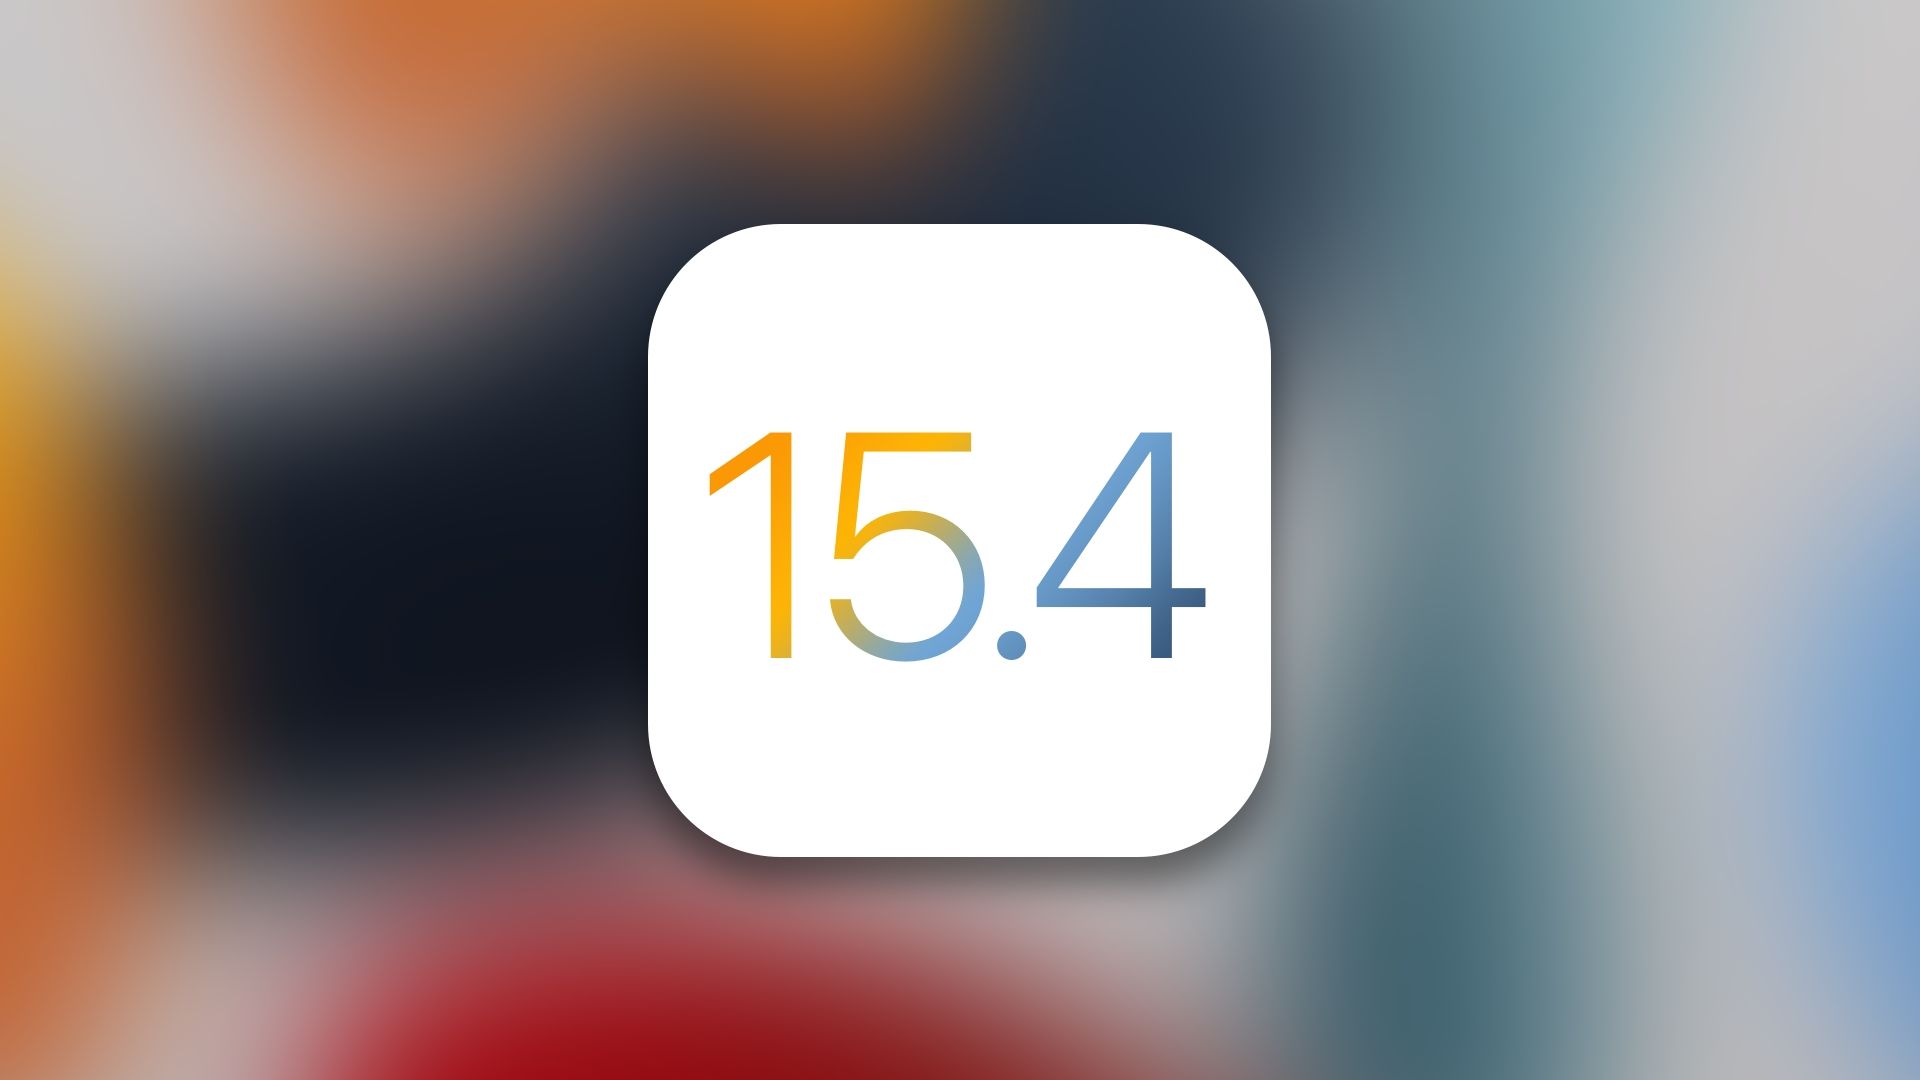 iOS e iPadOS 15.4 estão a chegar! Conhece as novidades.